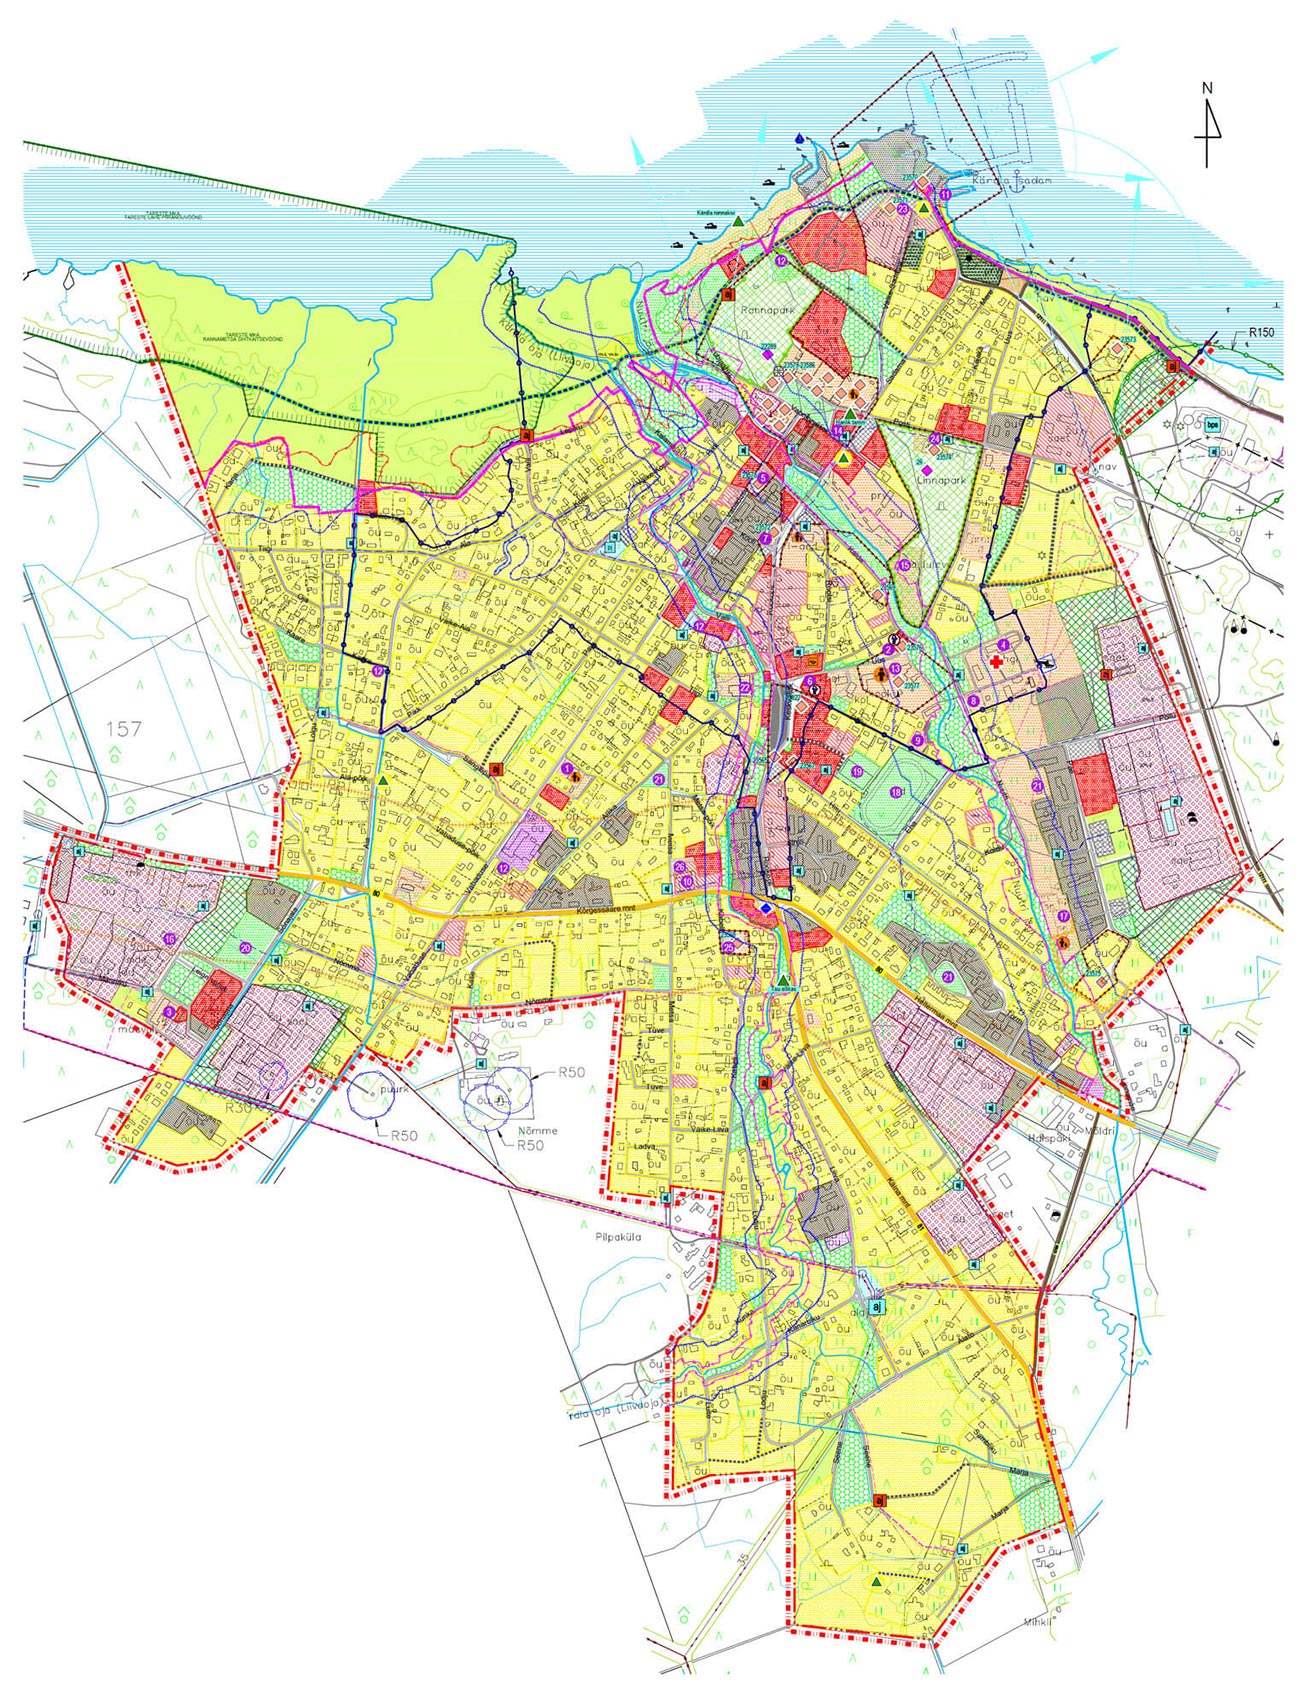 Kärdla city detailed plan